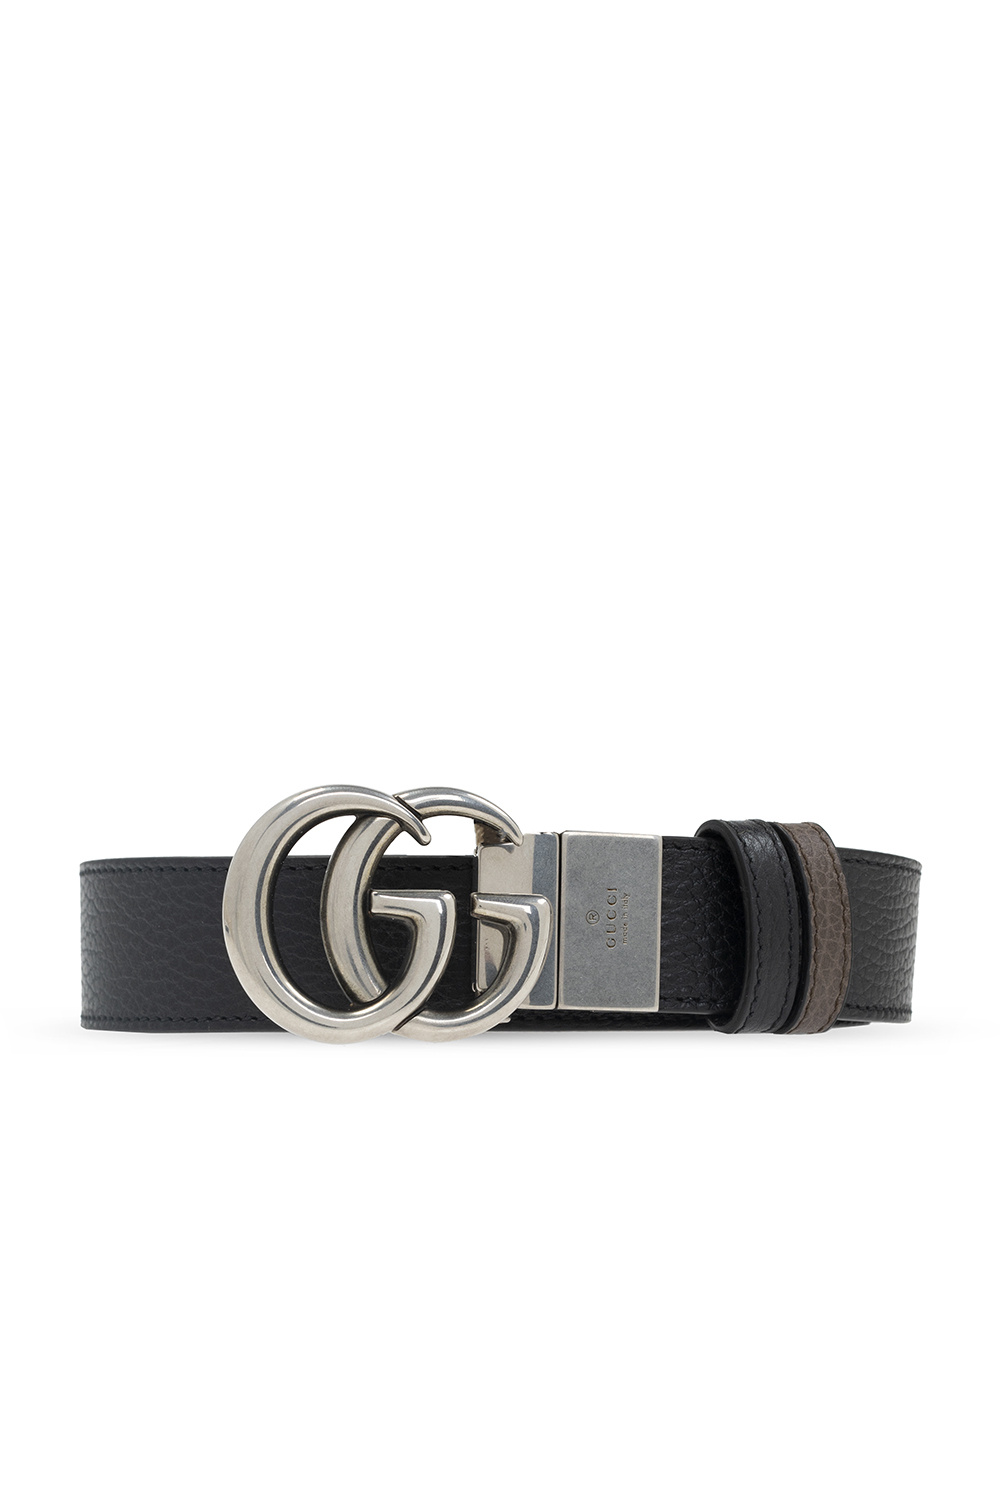 Palace x Gucci GG-P Supreme G Reversible Belt